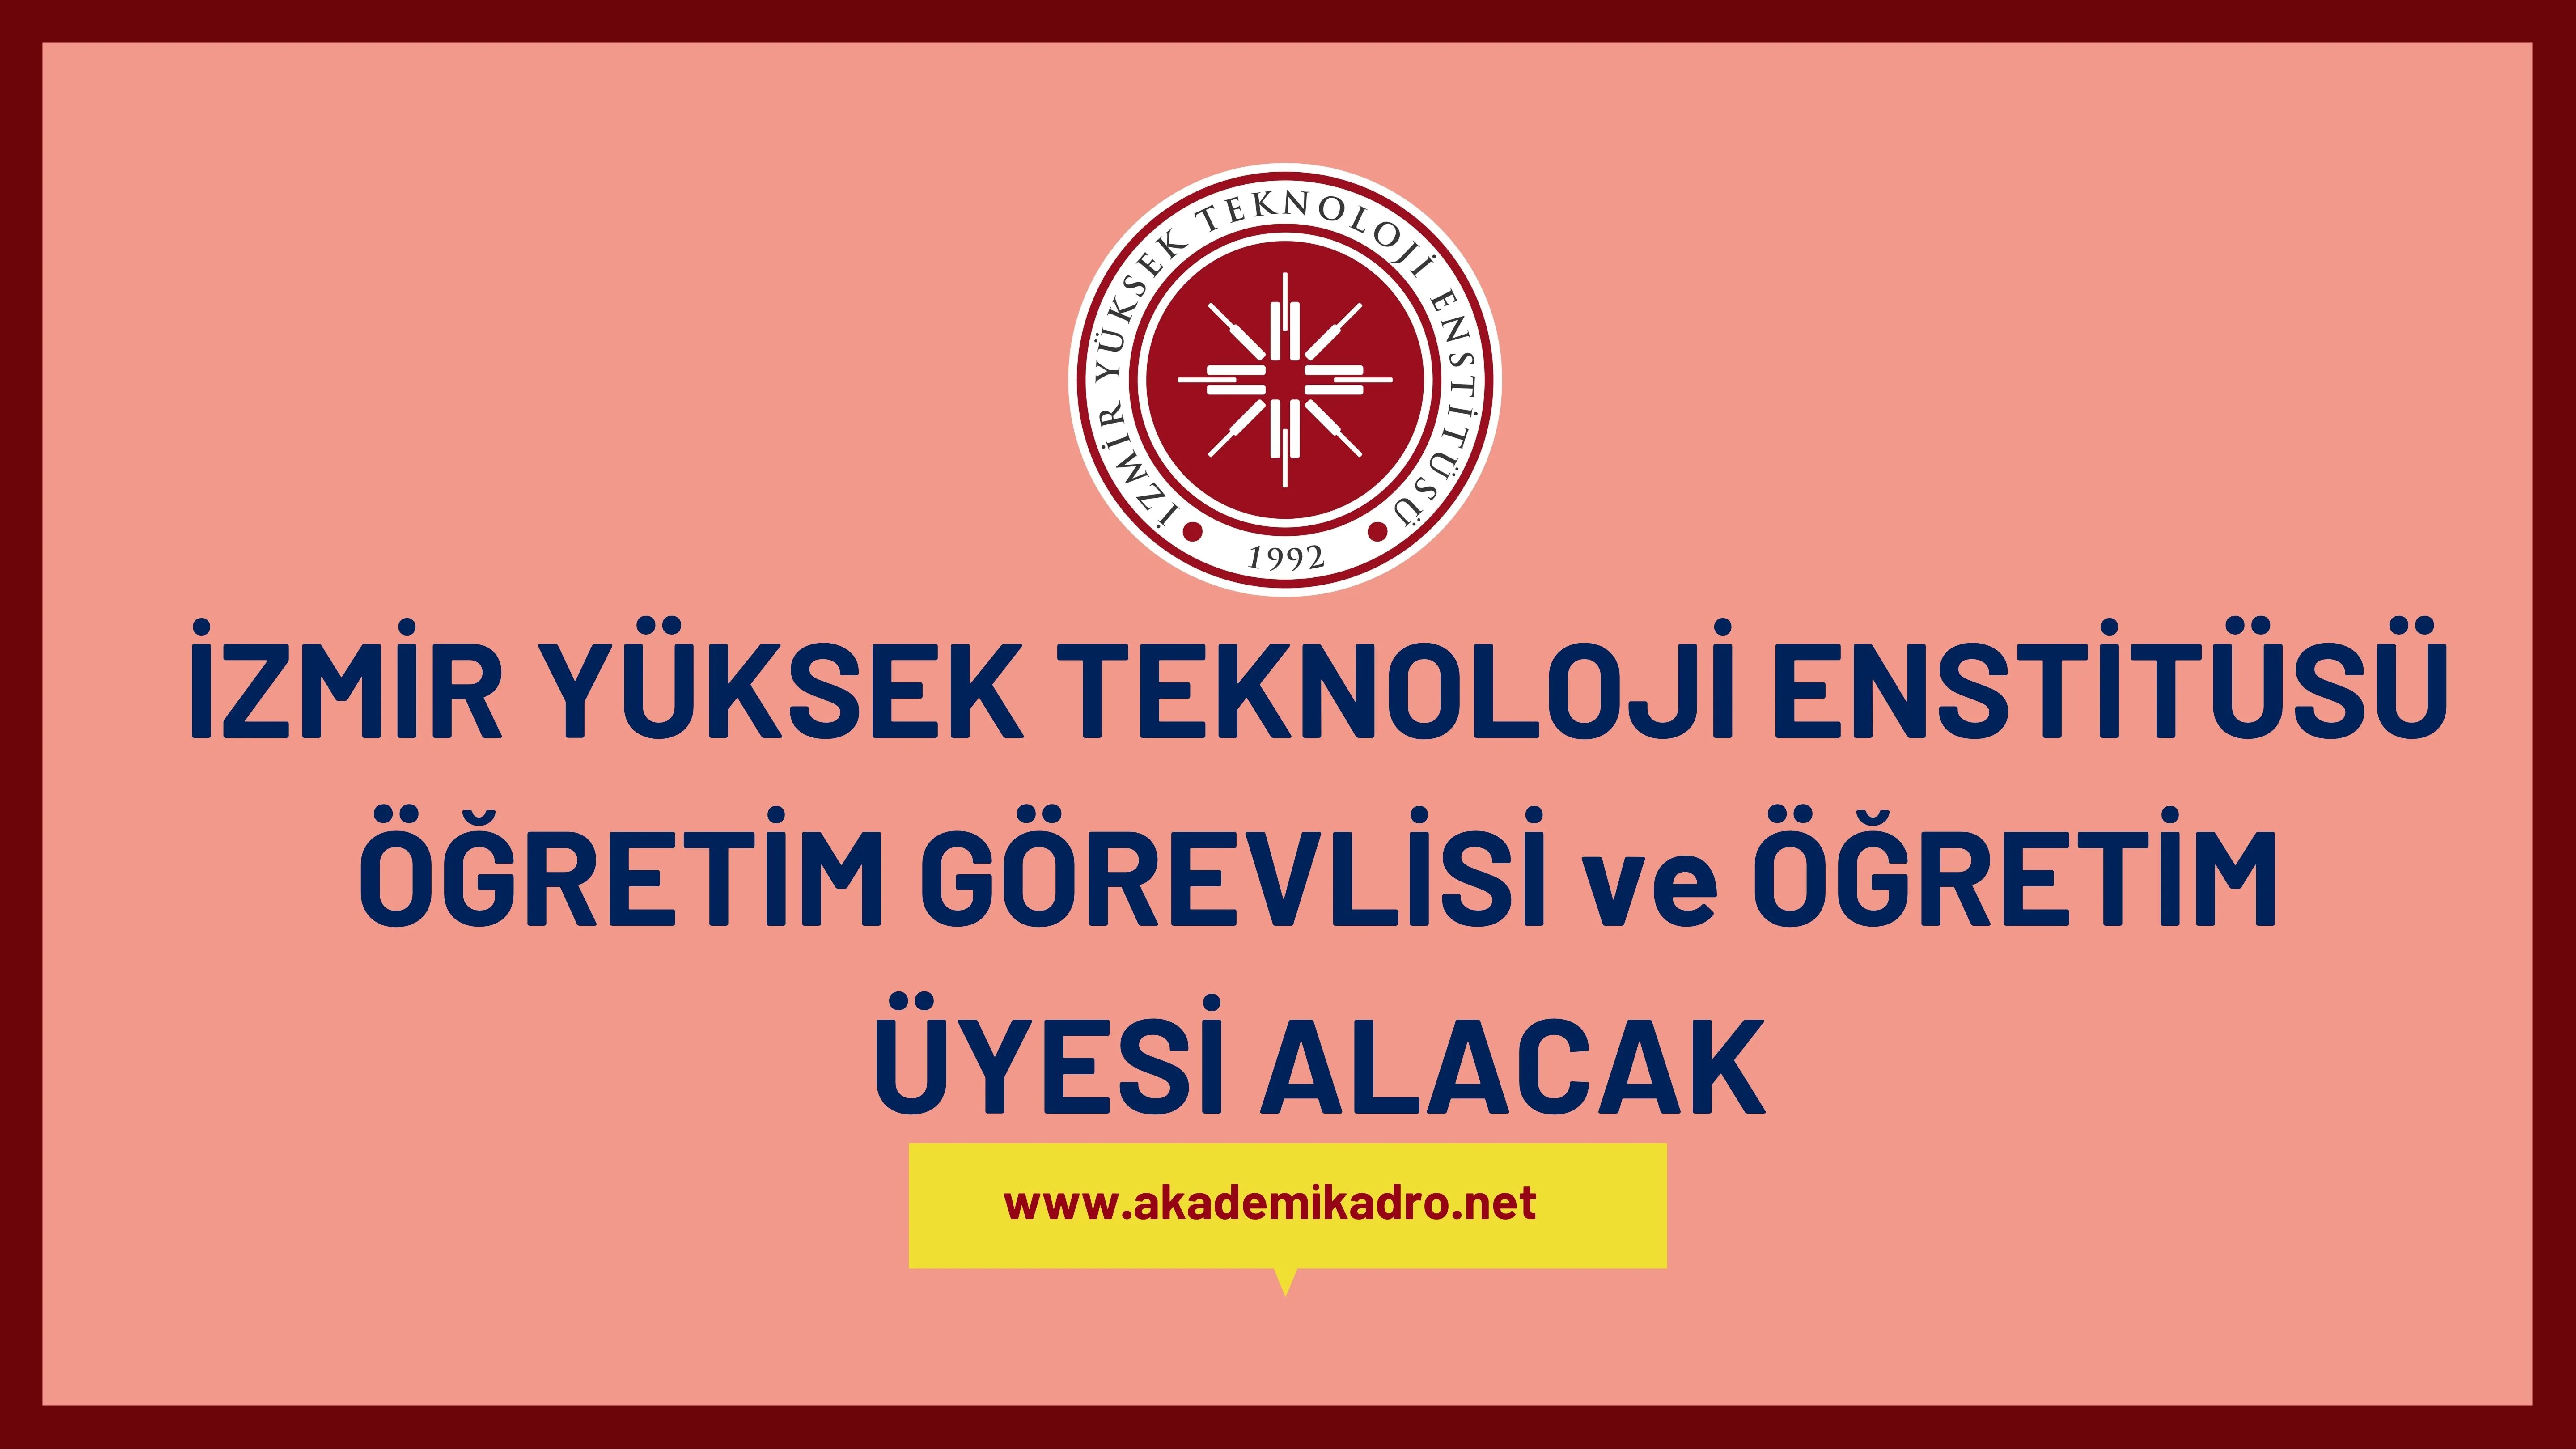 İzmir Yüksek Teknoloji Enstitüsü 2 Öğretim görevlisi ve 3 Öğretim üyesi alacak. Son başvuru tarihi 09 Ocak 2023.